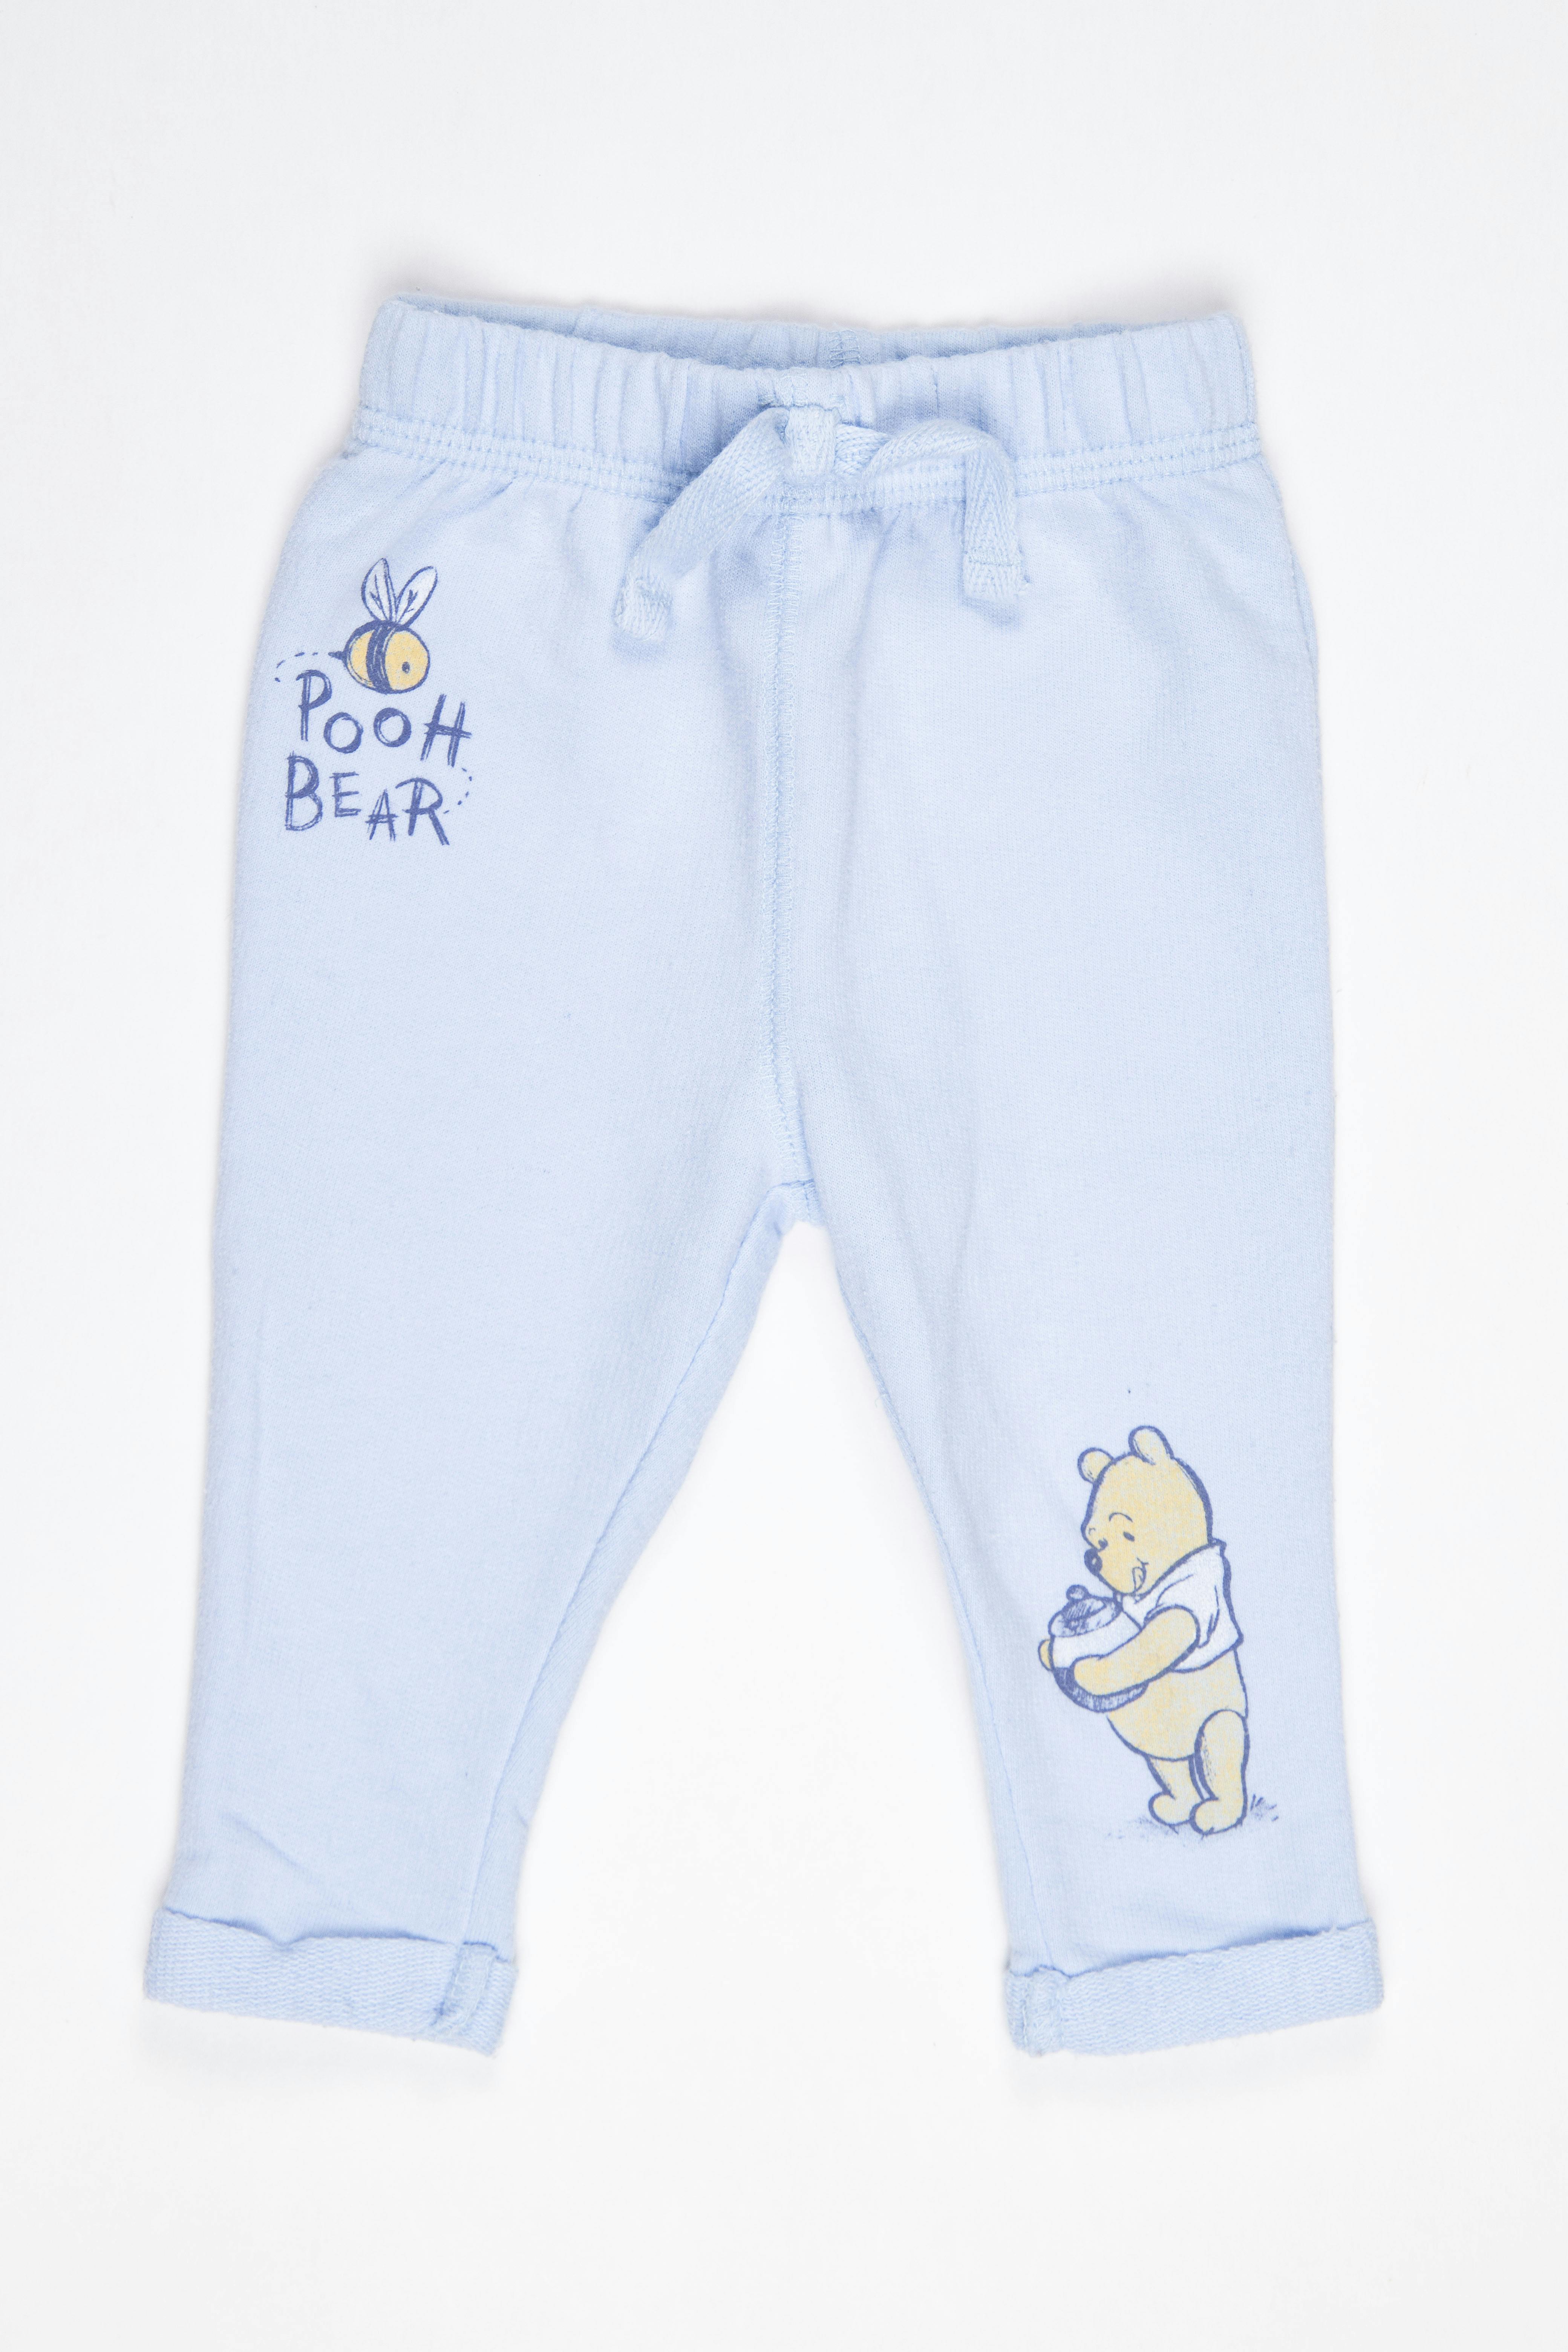 Pantalón celeste tipo buzo de winnie Pooh - Disney